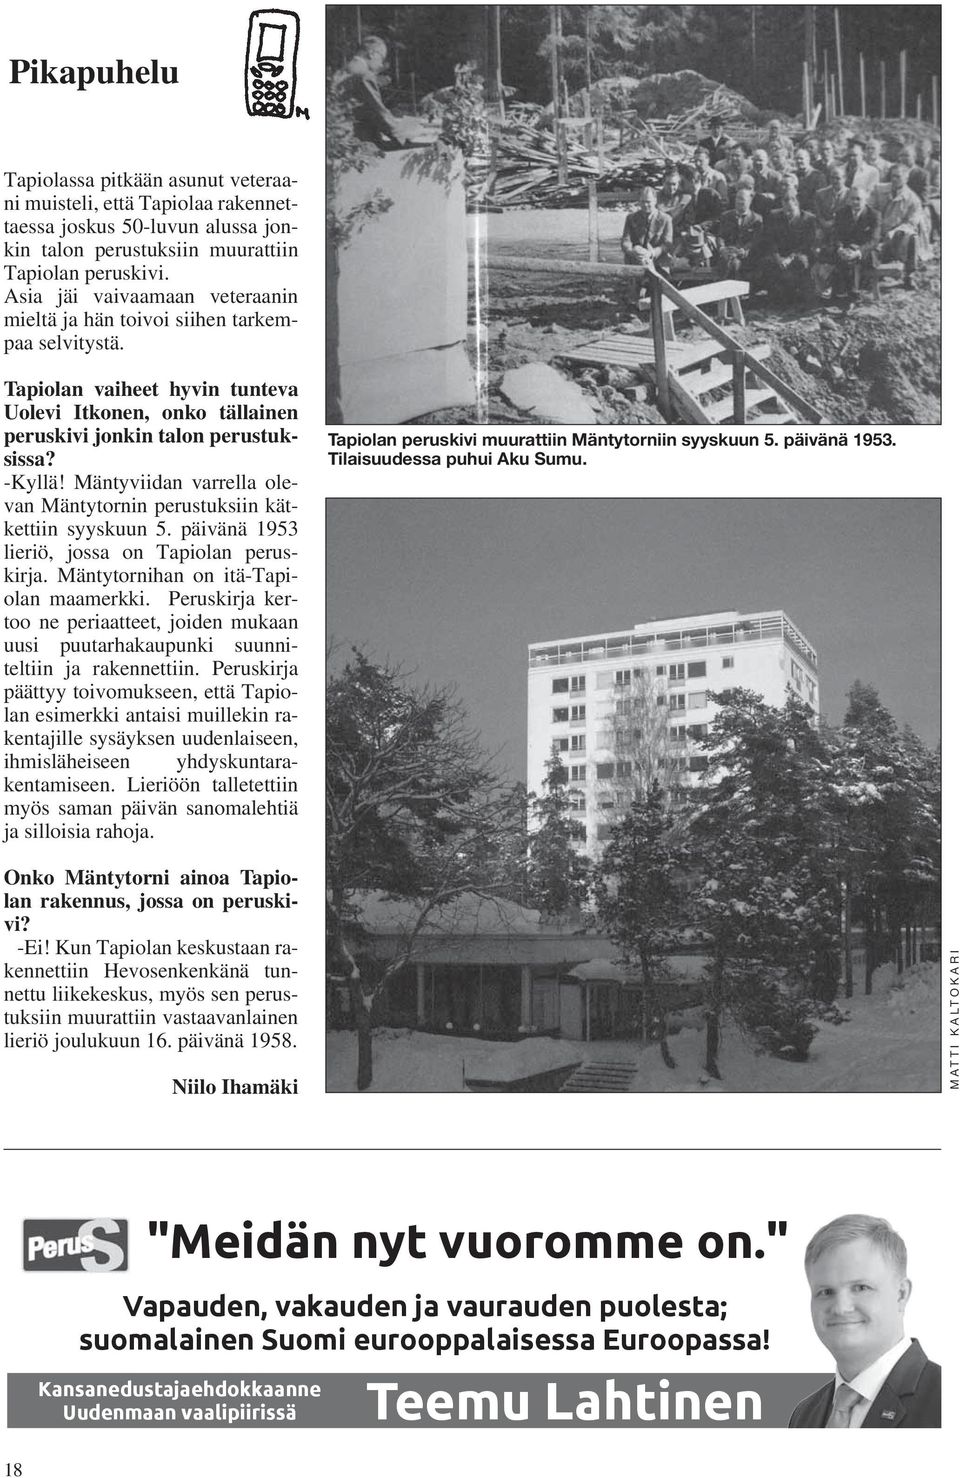 Mäntyviidan varrella olevan Mäntytornin perustuksiin kätkettiin syyskuun 5. päivänä 1953 lieriö, jossa on Tapiolan peruskirja. Mäntytornihan on itä-tapiolan maamerkki.